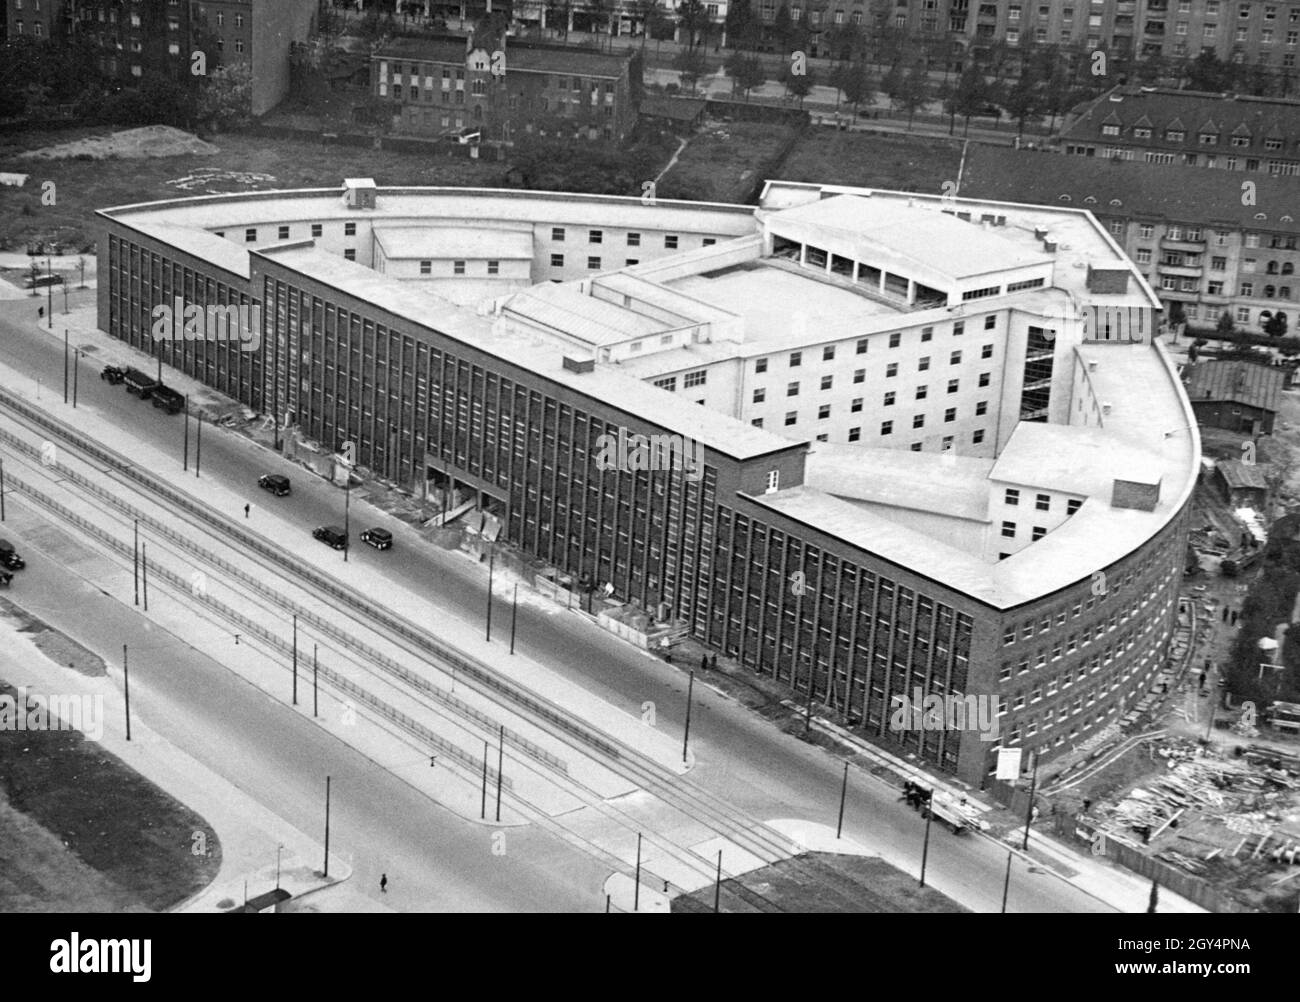 Il 22 gennaio 1931 è stata inaugurata la nuova radio House di Berlino (oggi Haus des Rundfunks) a Masurenallee a Berlino-Westend. La foto è stata scattata prima dell'inaugurazione della torre radiofonica di Berlino. Il Kaiserdamm corre sullo sfondo. [traduzione automatizzata] Foto Stock